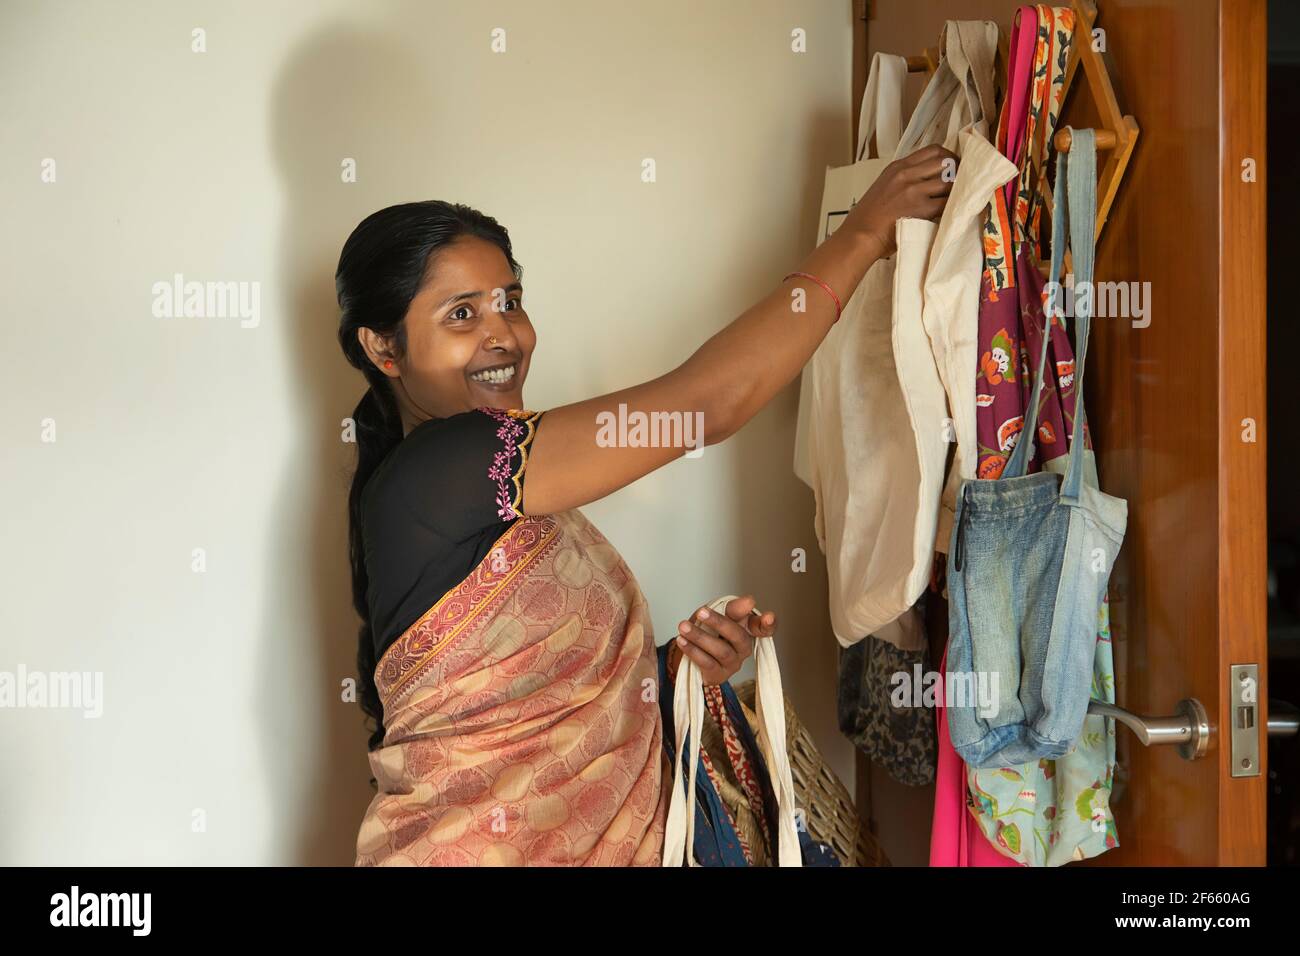 Ein Hausmacher, der wiederverwendbare Stofftaschen zum Einkaufen trägt Stockfoto